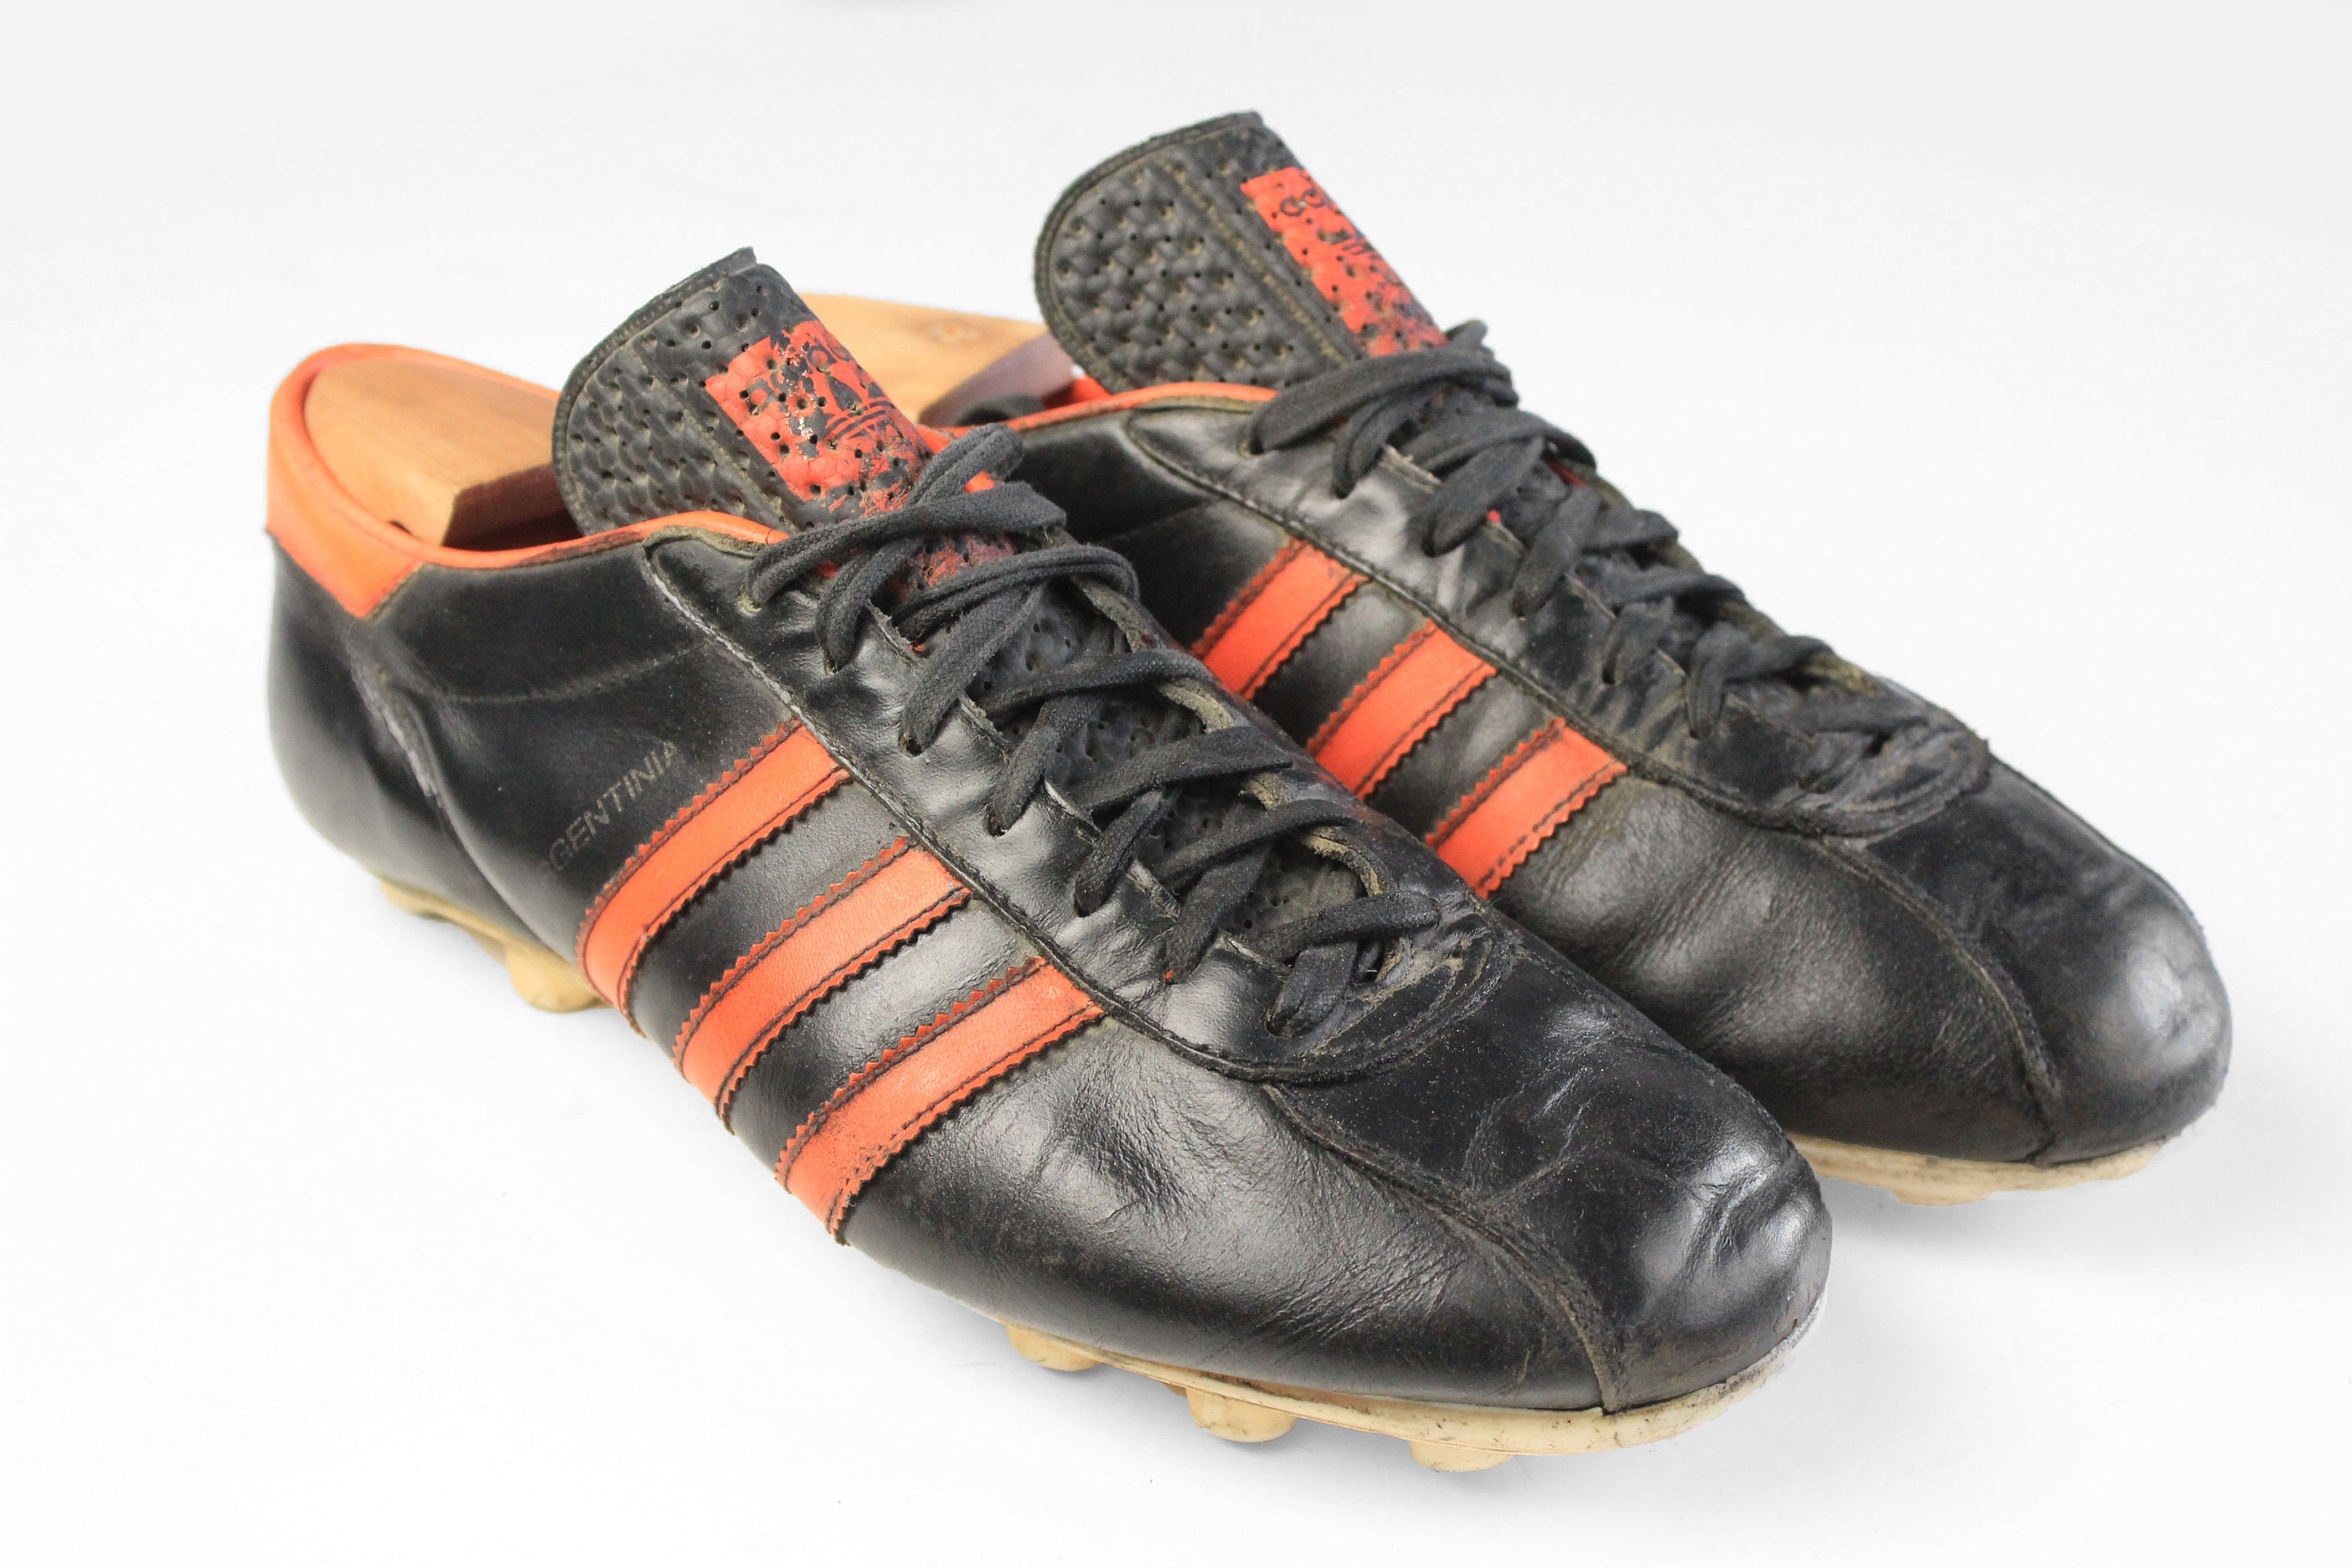 80s soccer boots -  España